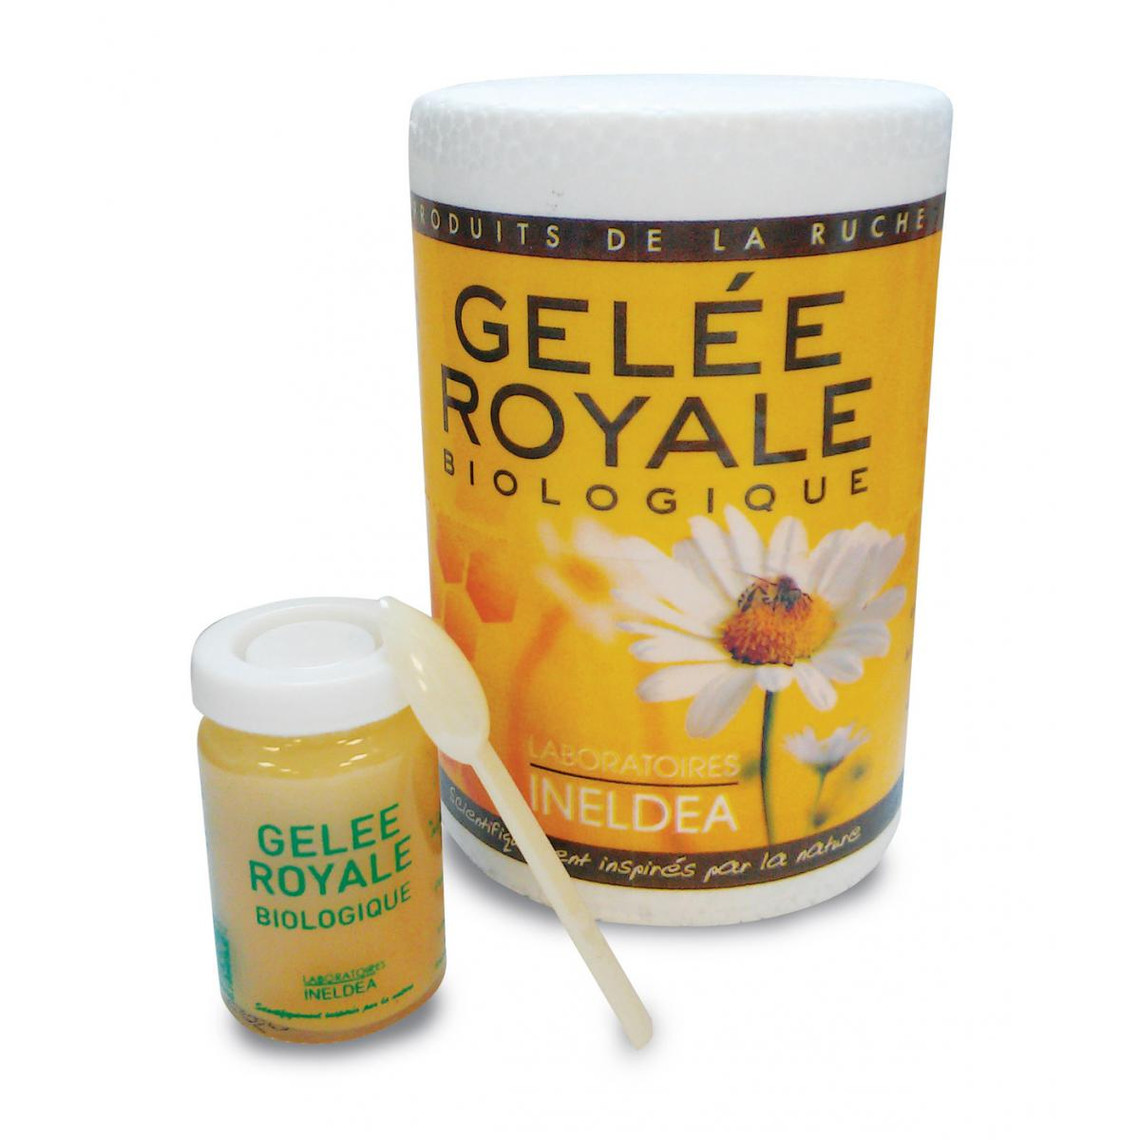 Gelee Royale Bio 30g 100% pure - Complément alimentaire/Vitalité et  Immunité - Le coin des écolos